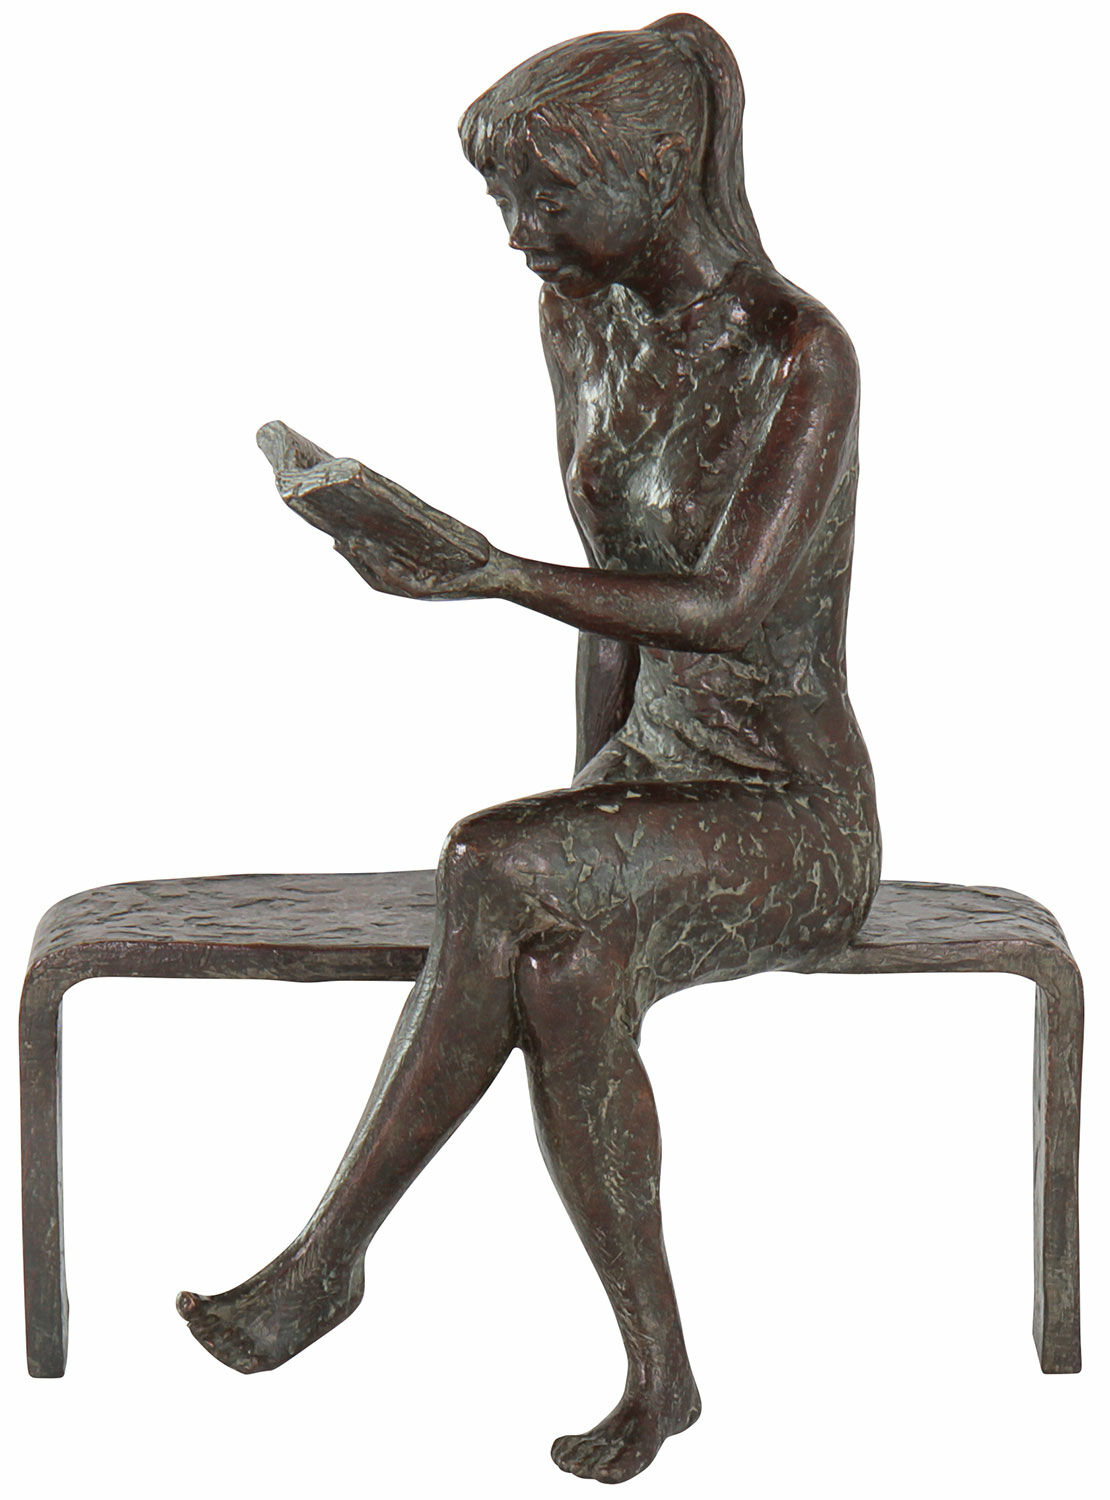 Skulptur "Læsende pige", bronze von Jürgen Ebert